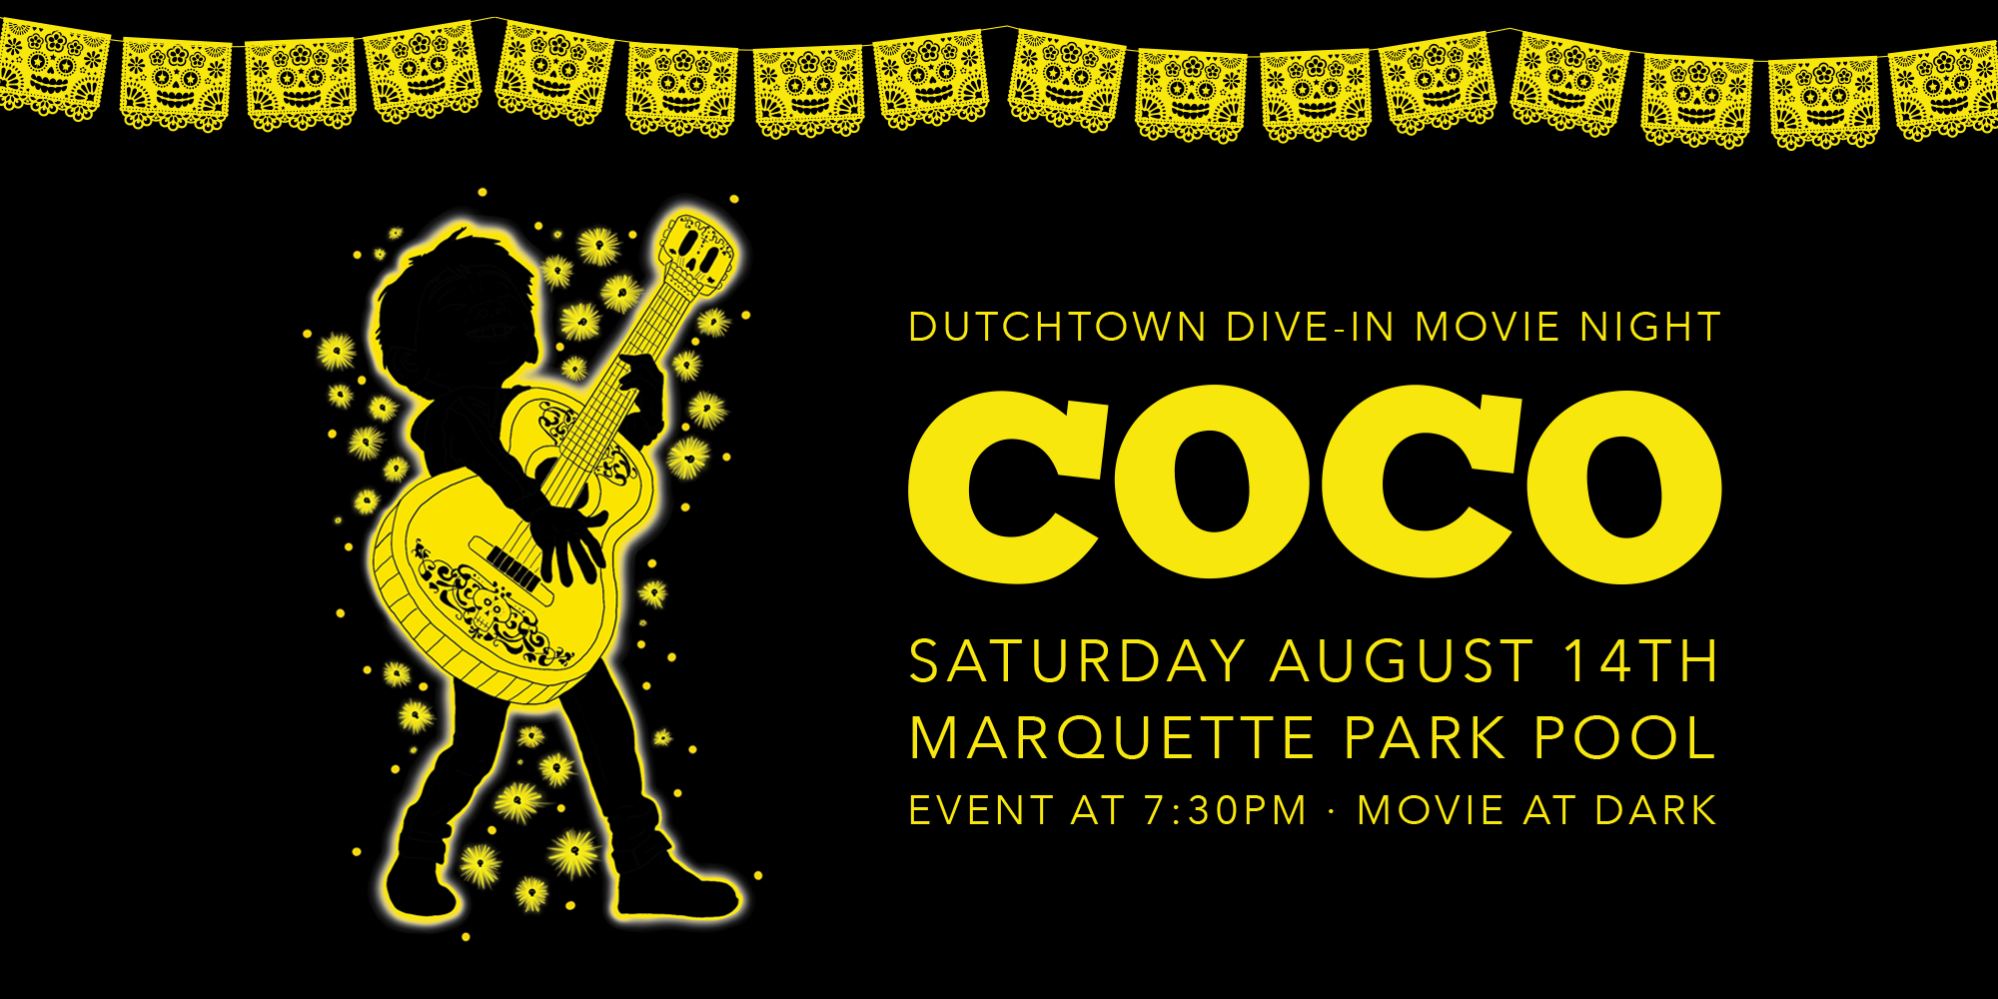 Dutchtown Dive-In Movie Night: Coco